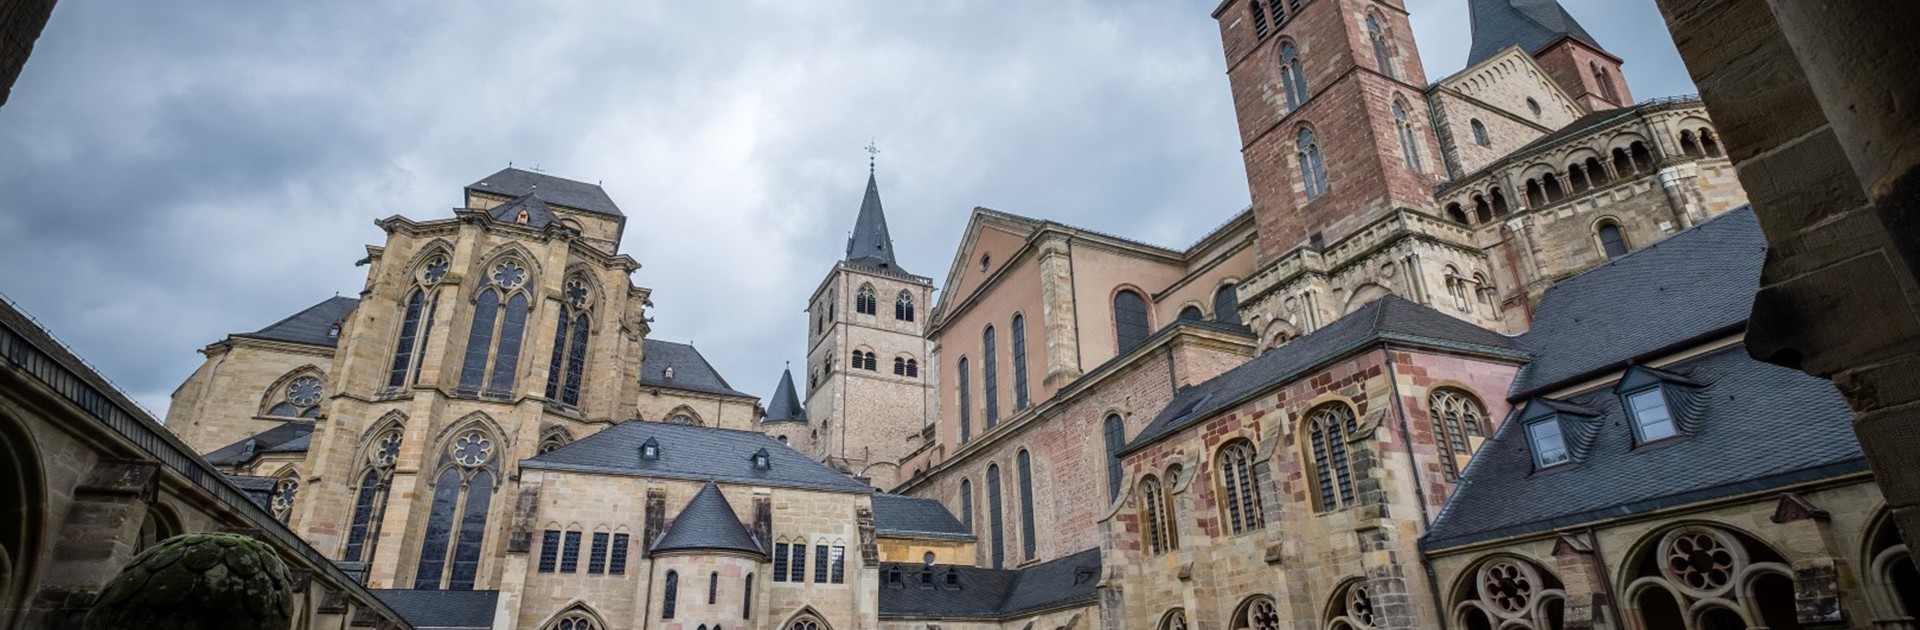 Trier Cathedral - © Herbert Schroyen